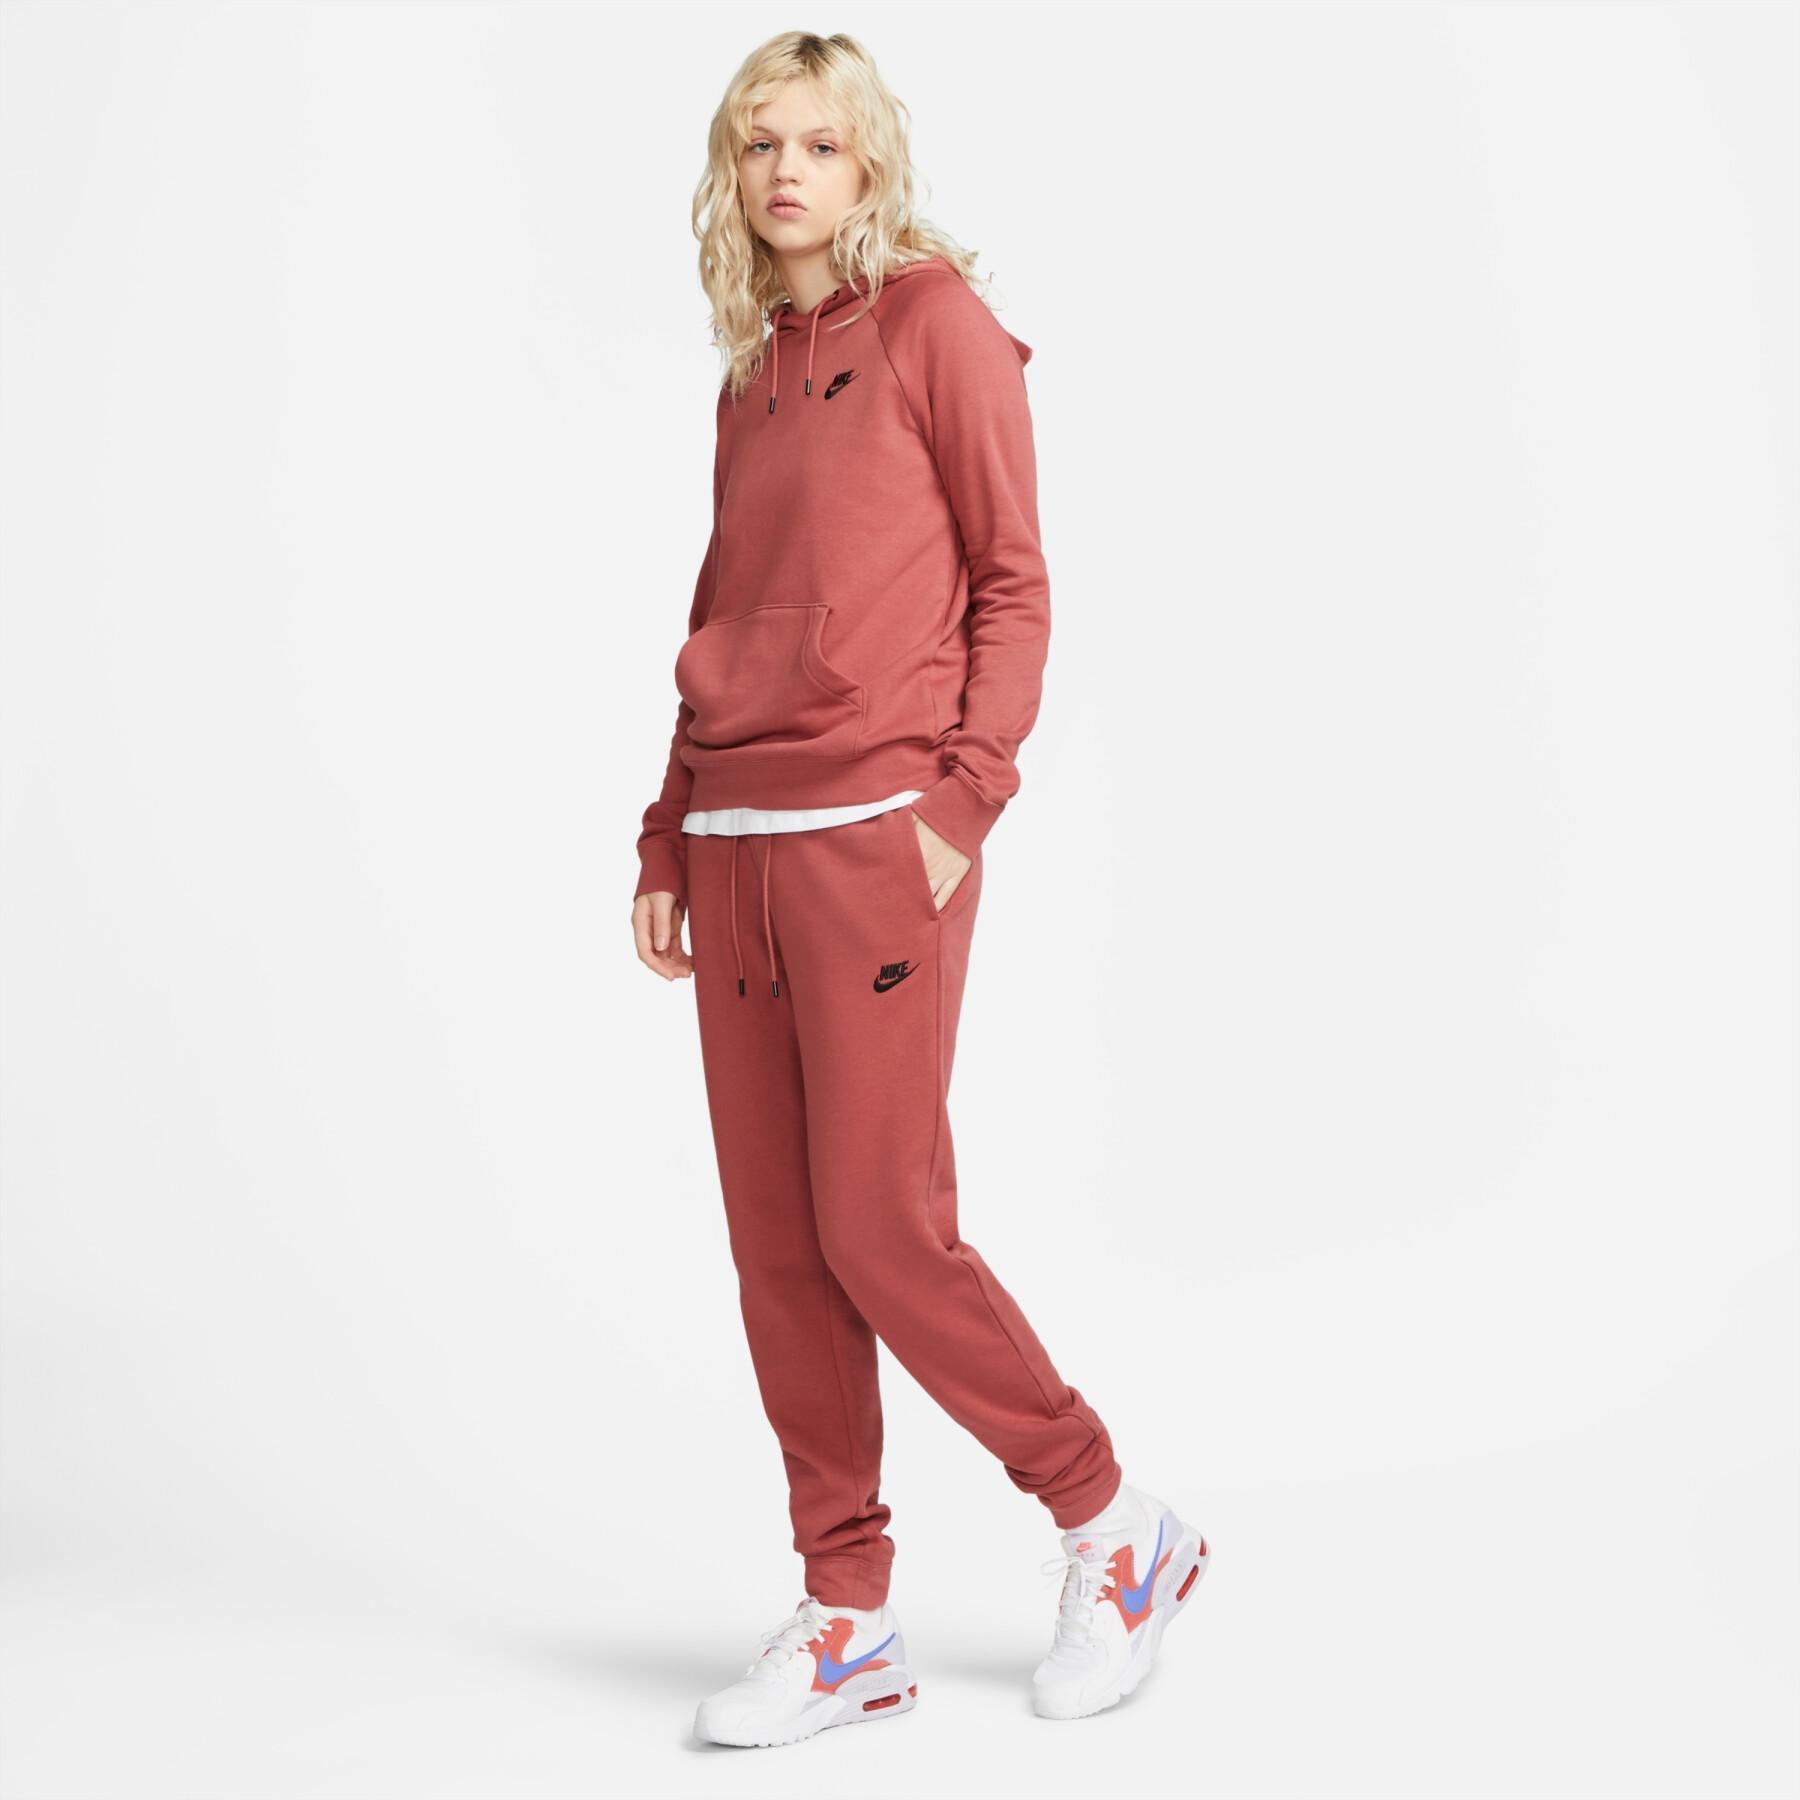 Women's jogging suit Nike Sportswear Essential